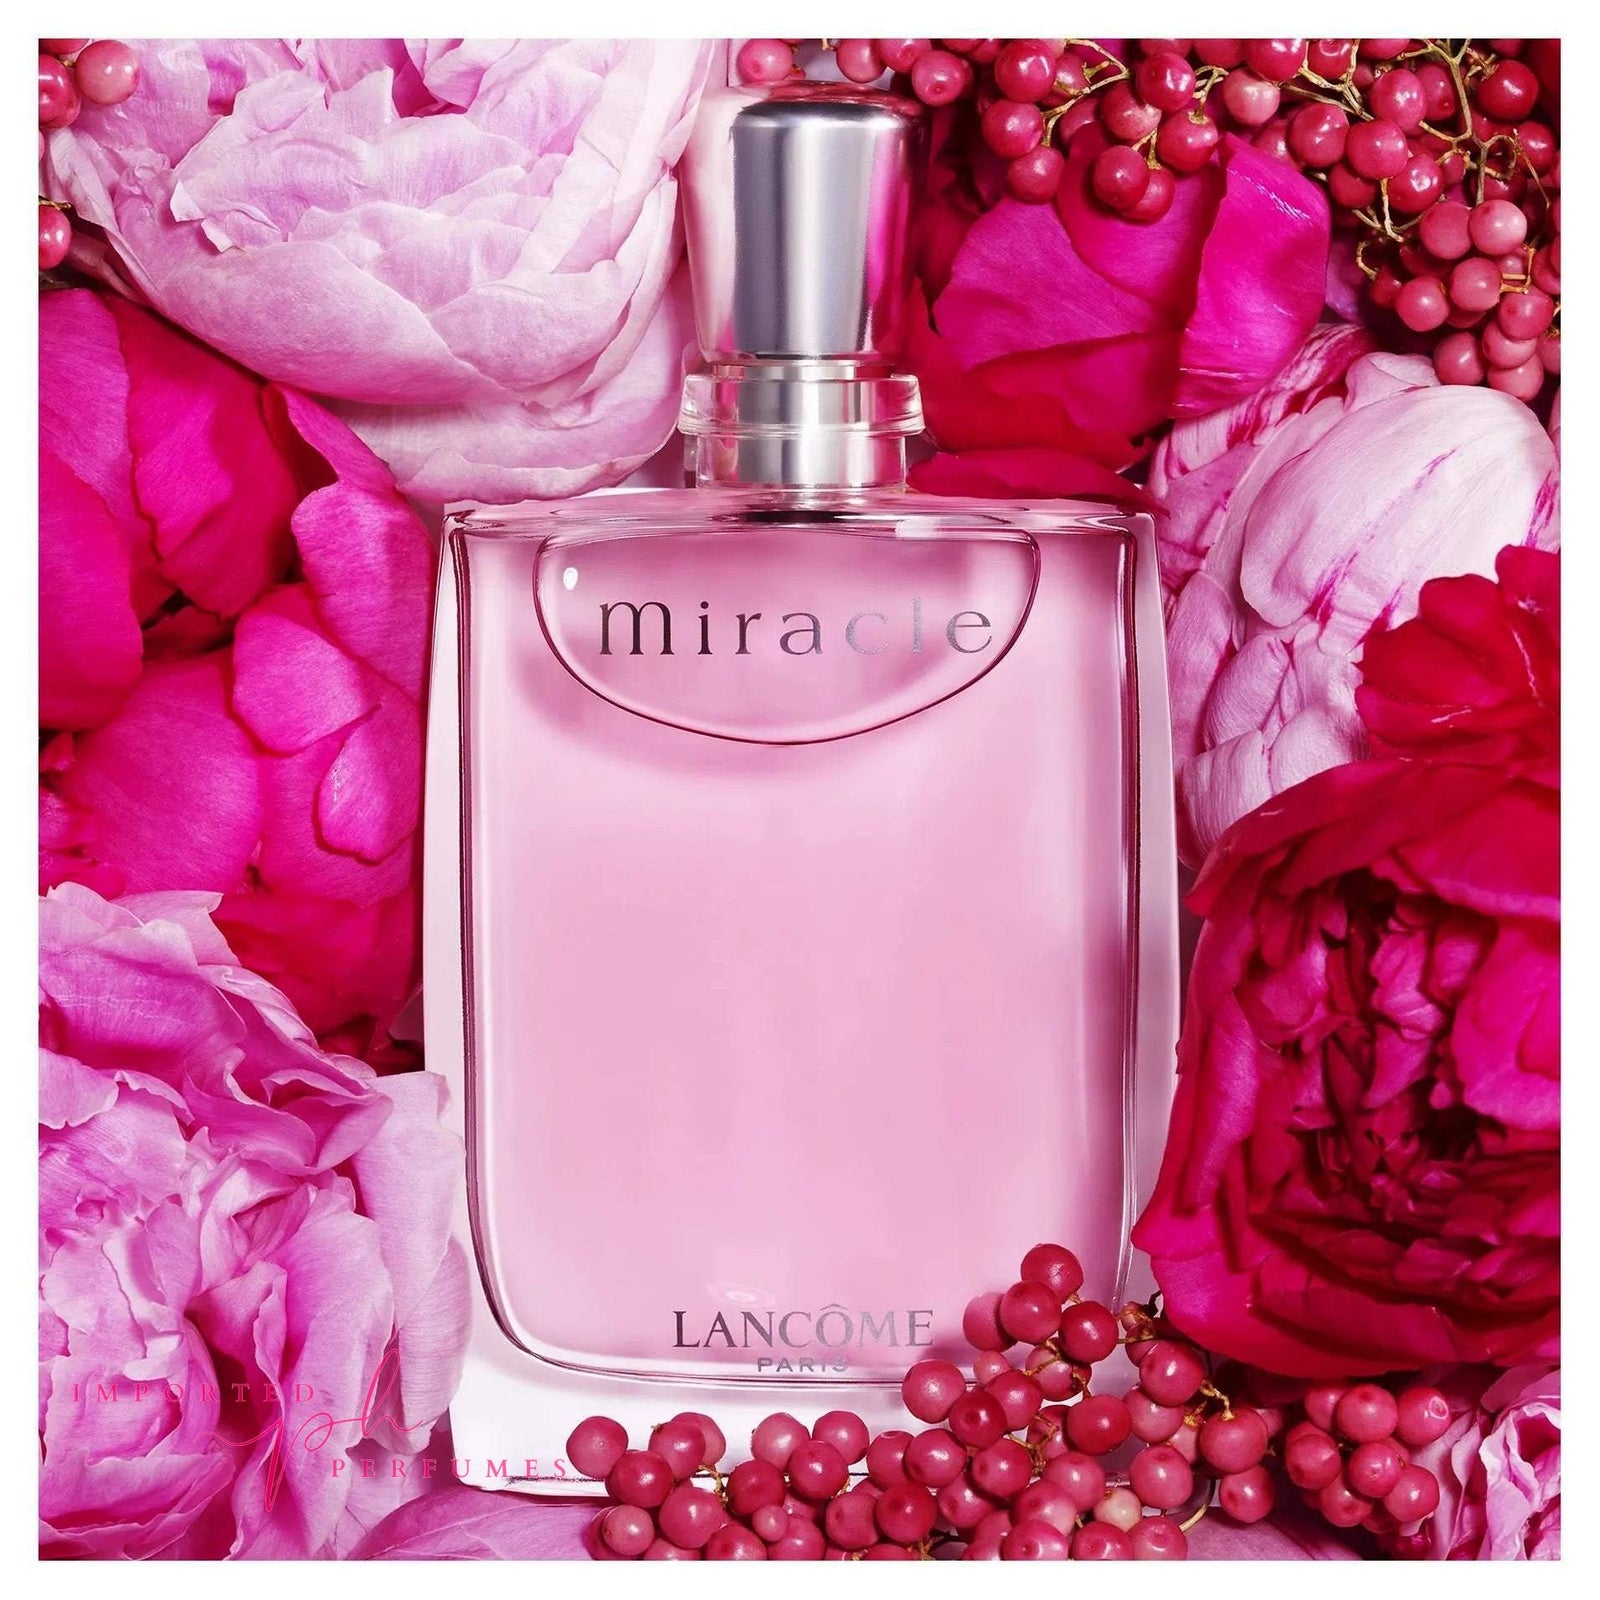 Miracle By Lancome Paris For Women Eau De Parfum 100ml-Imported Perfumes Co-Lancome,Lancome Paris,Miracle,Paris,Women